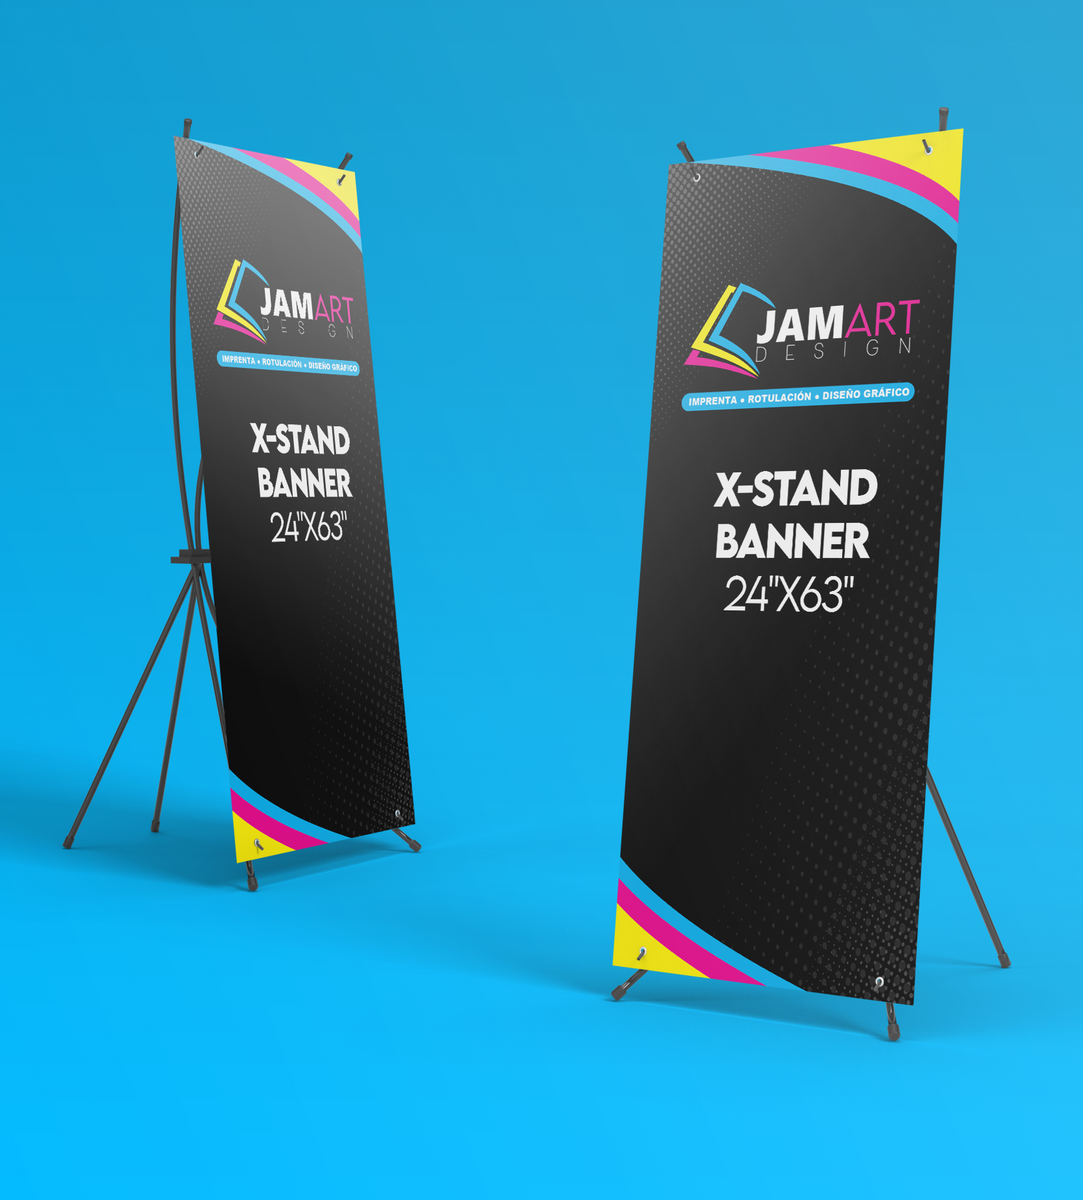 X-Stand Banner – JAM ART DESIGN